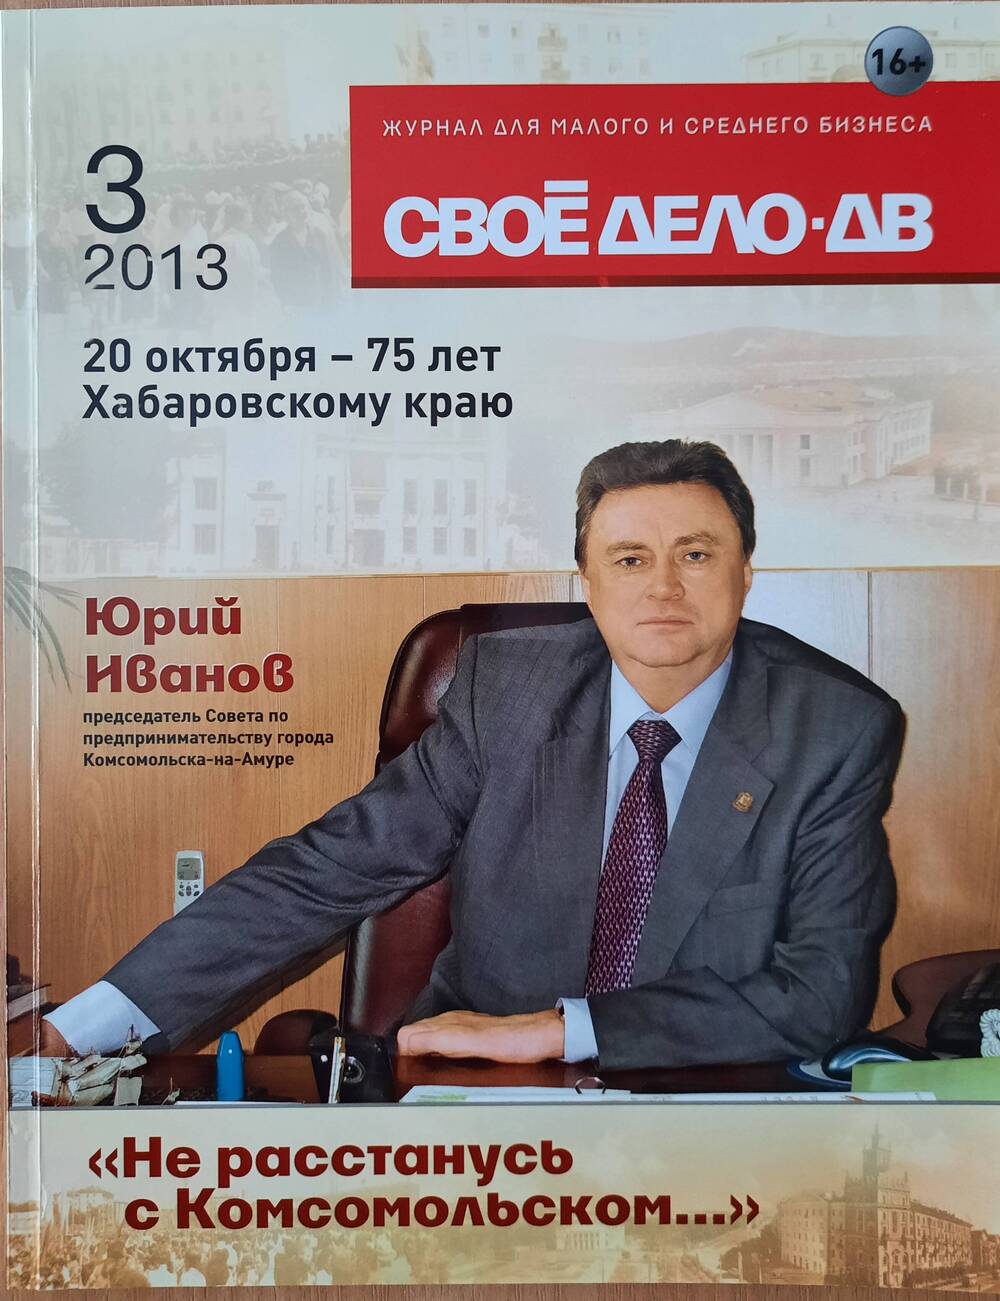 Журнал для малого и среднего бизнеса «Своё дело-ДВ» № 3 2013 г.